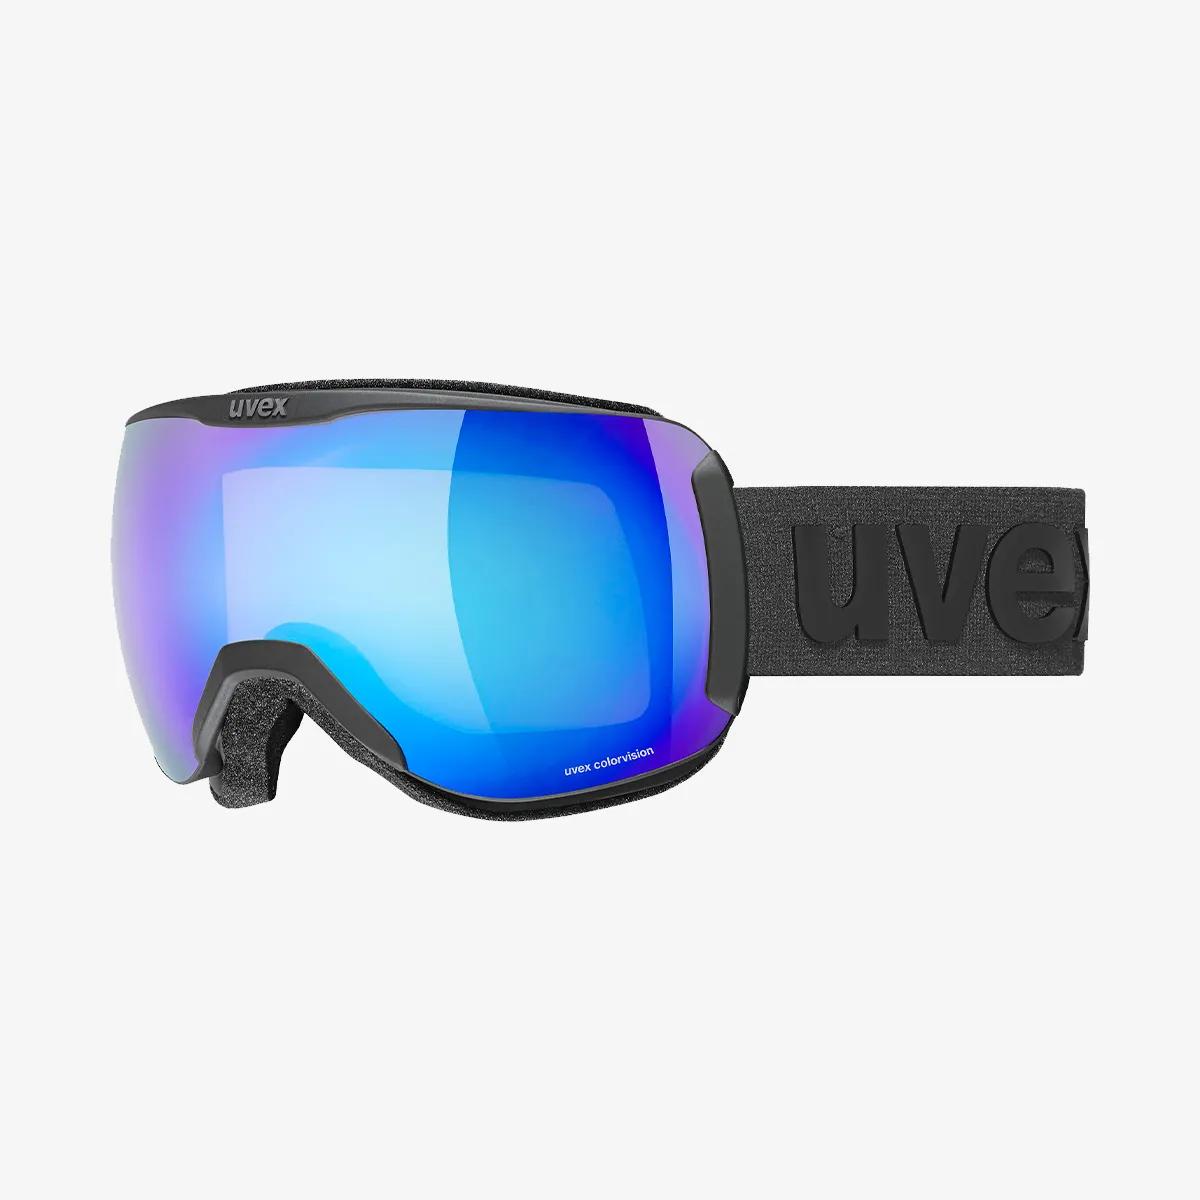 UVEX uvex downhill 2100 CV black mat SL/blue- 